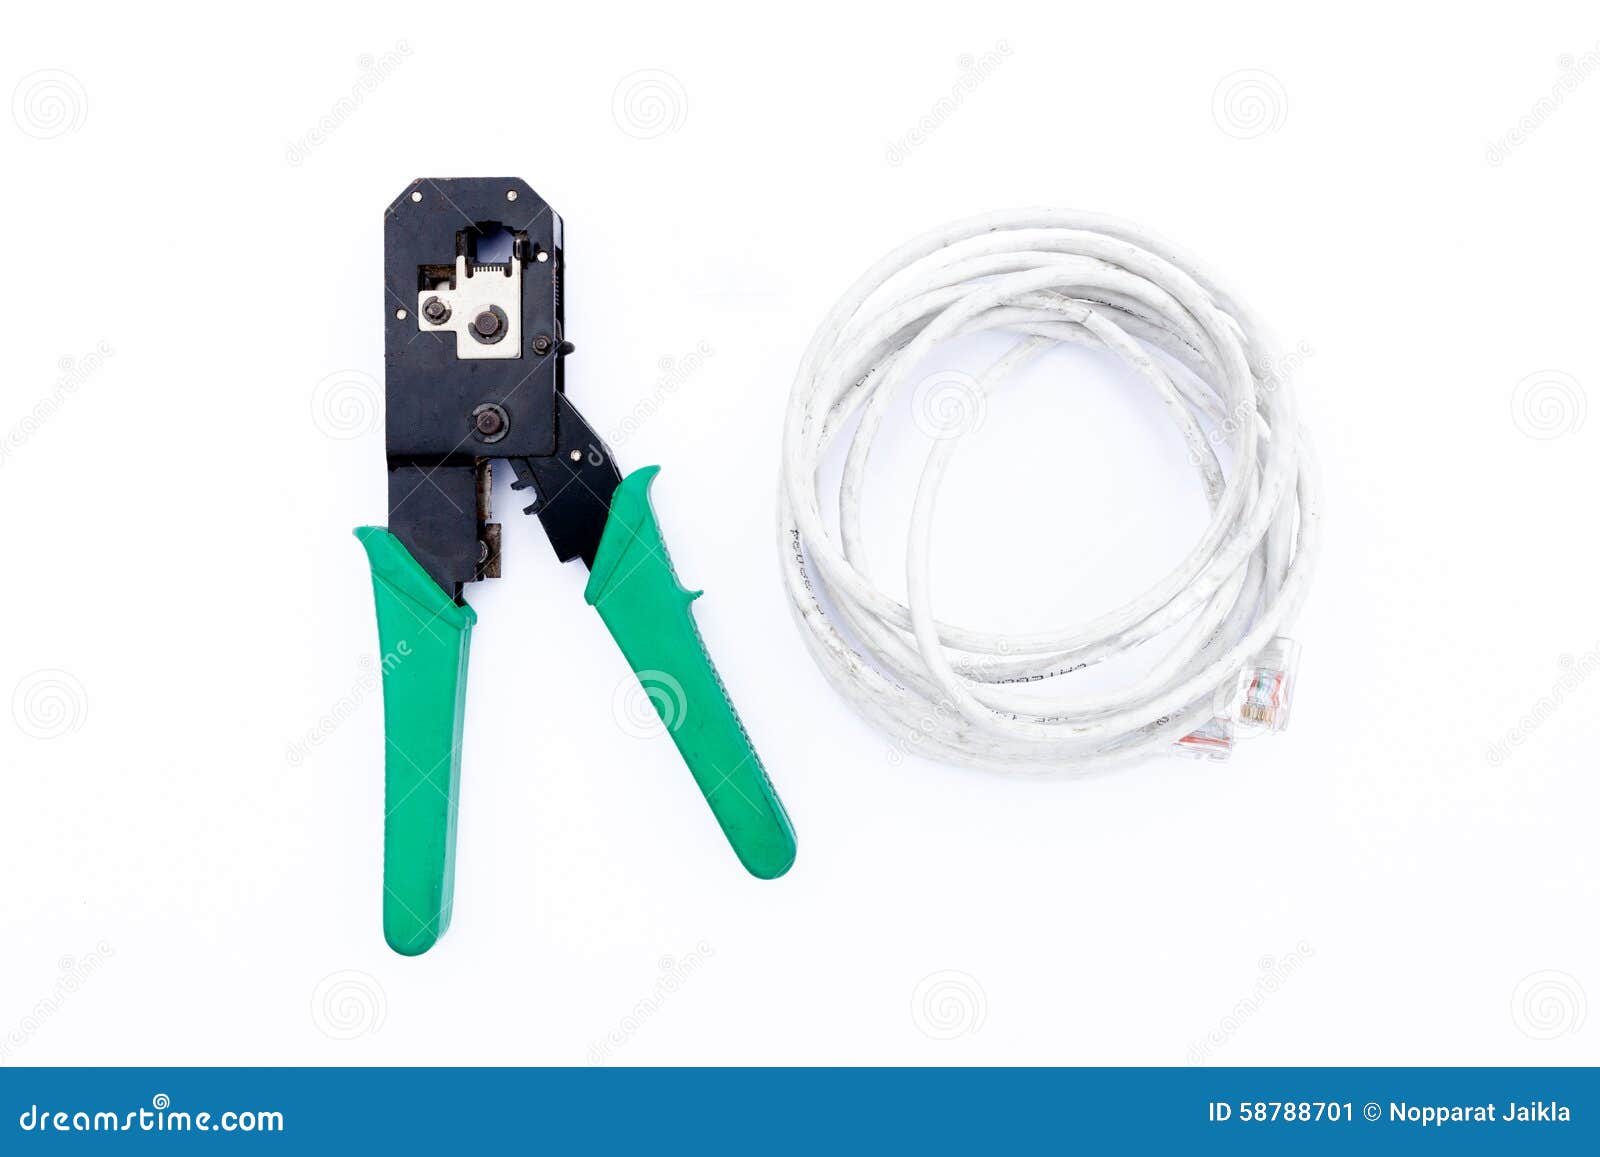 tool for work modular plug crimper rj45 rj11 rj12